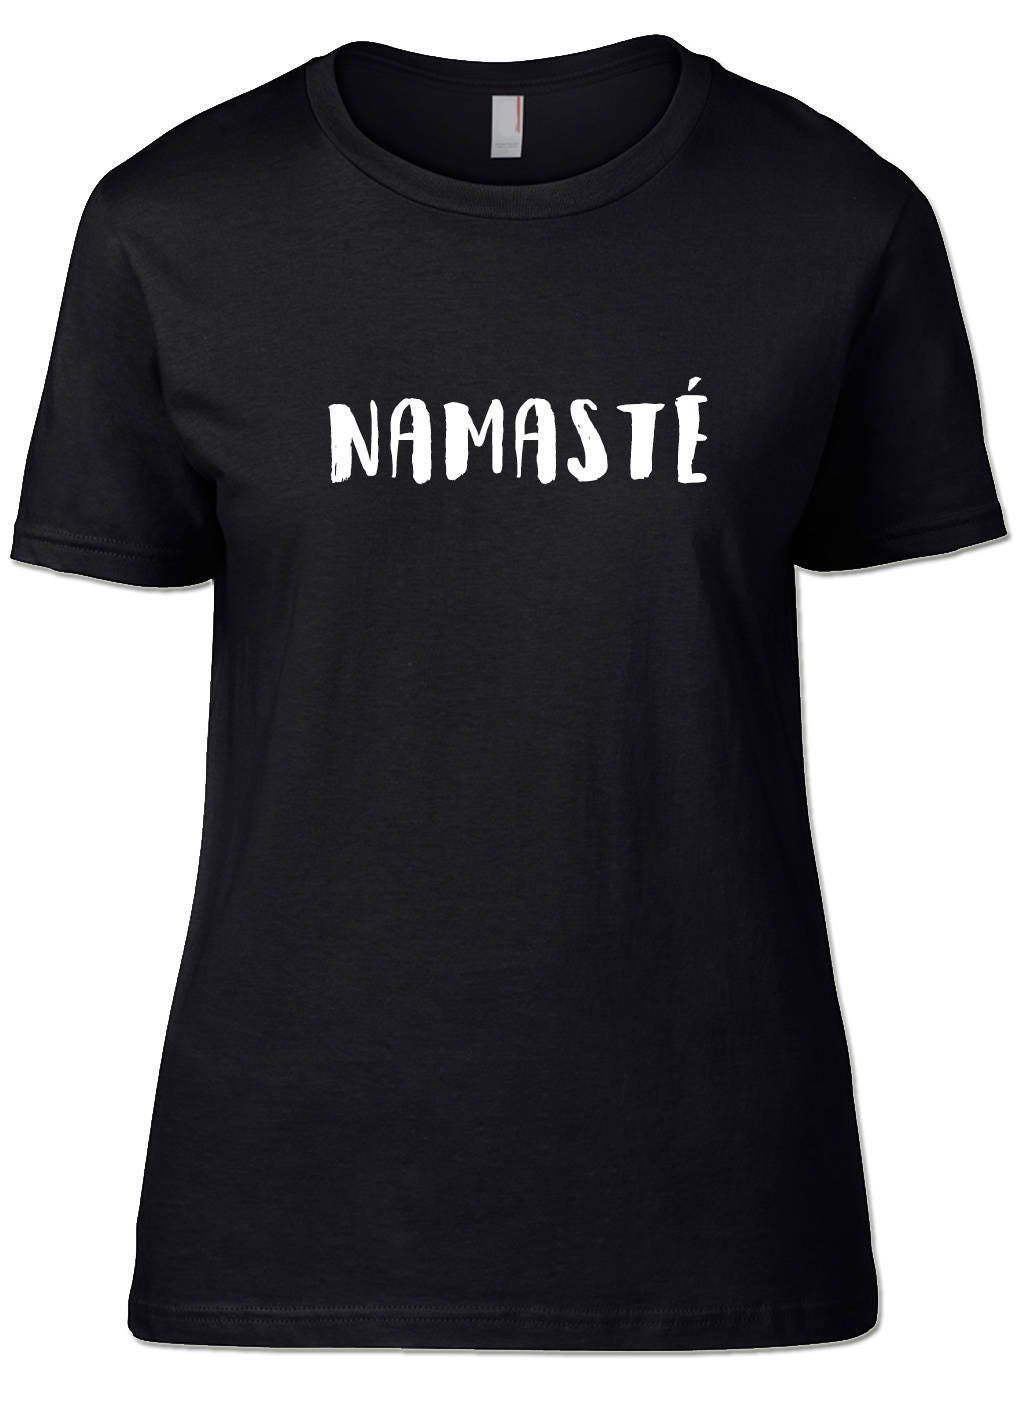 Namaste T-Shirt Namaste Yoga Shirts Meditation Shirts